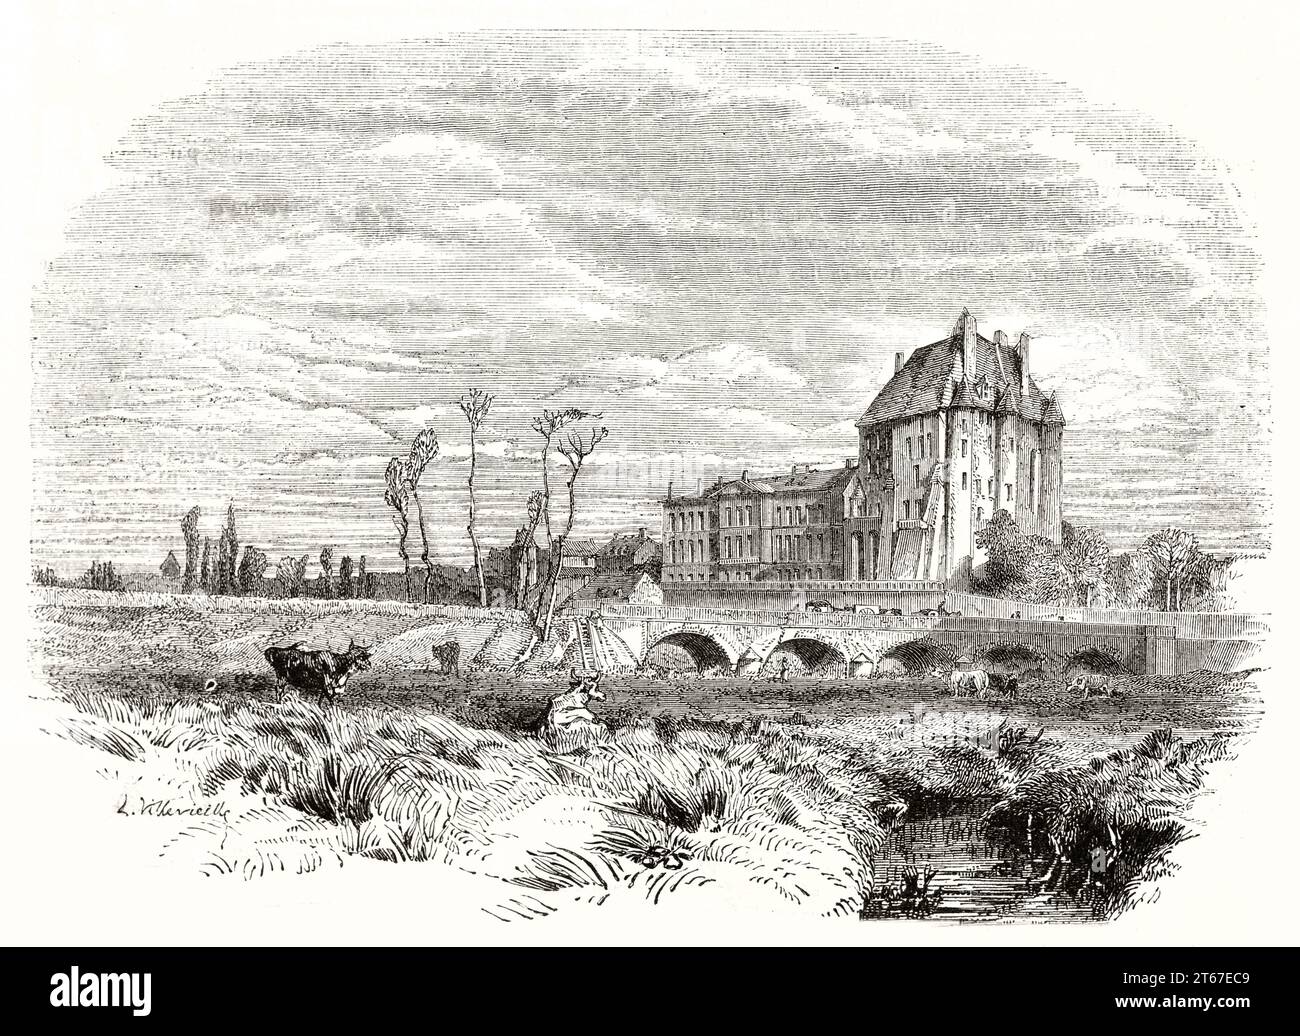 Vue ancienne de Châteauroux, France. Par Villevieille, publ. Sur magasin pittoresque, Paris, 1851 Banque D'Images